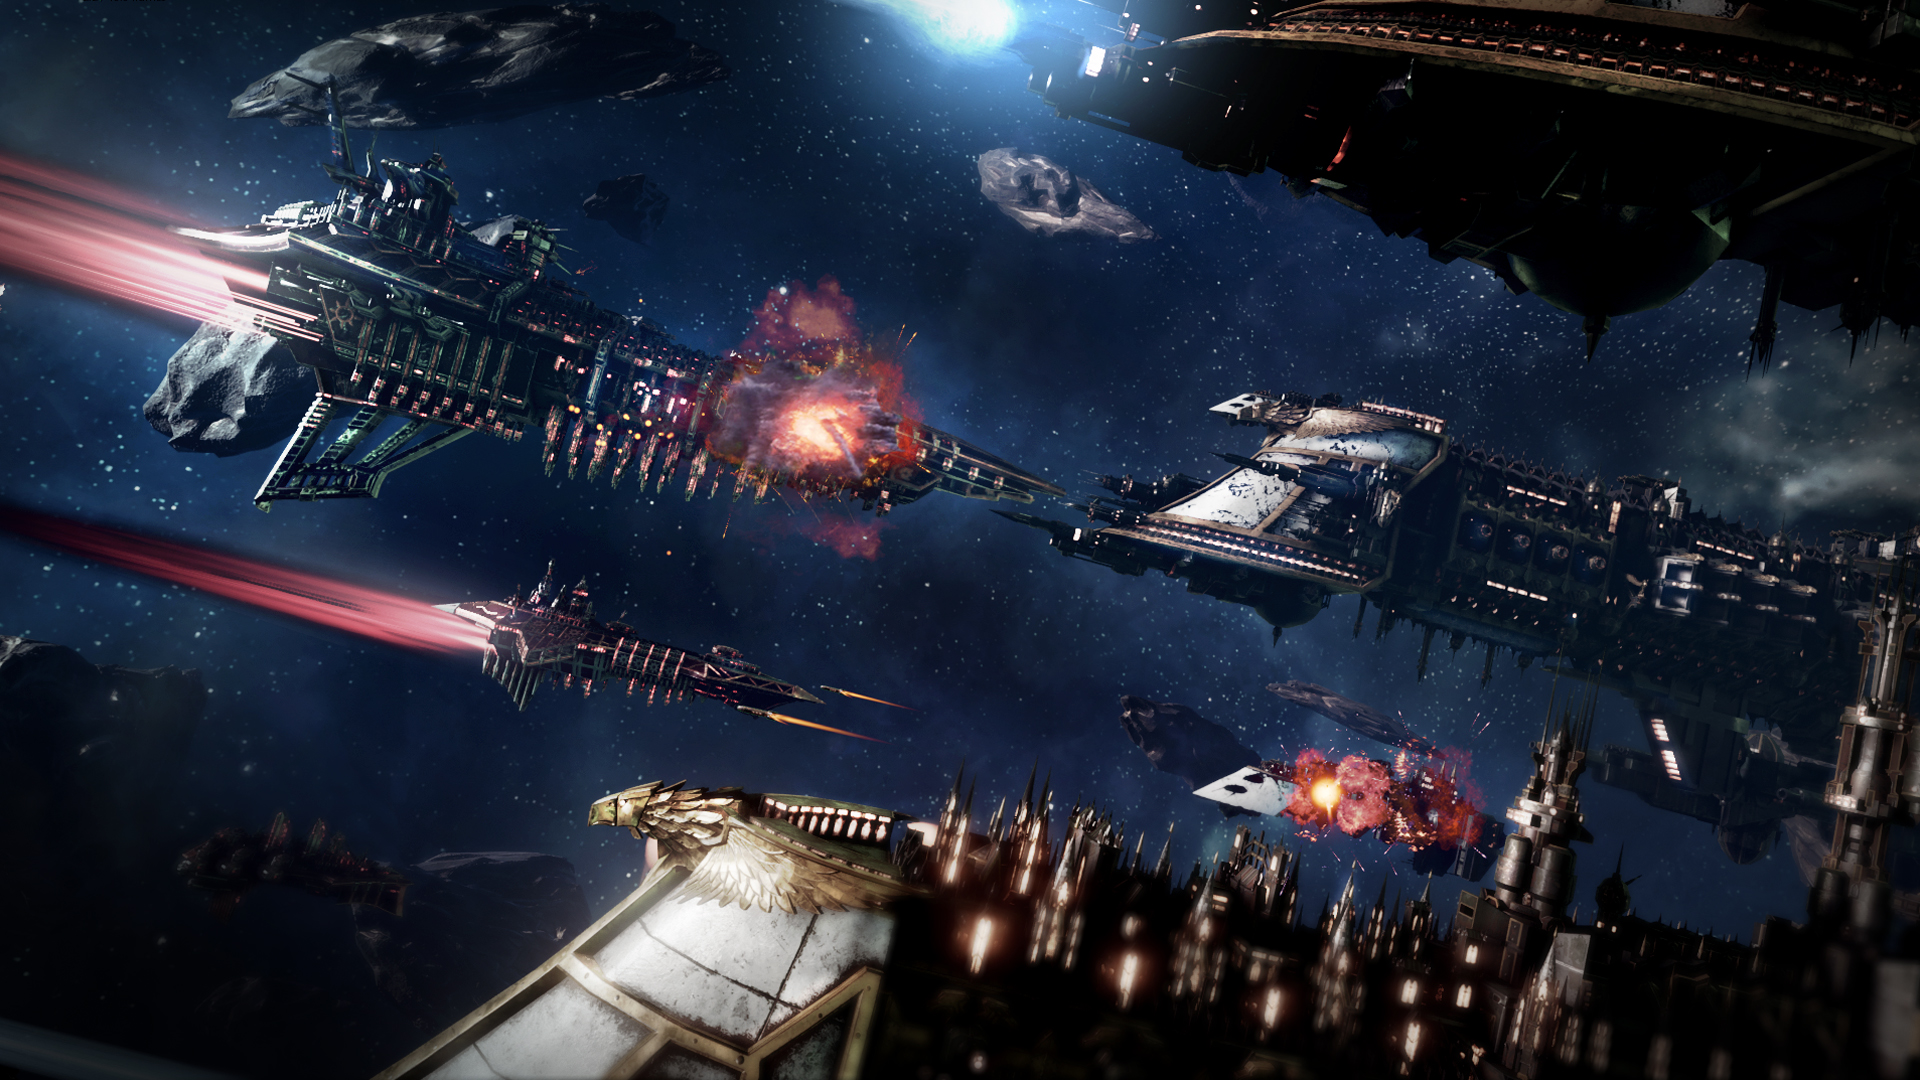 Battlefleet Gothic: Armada, the game of Warhammer space battles